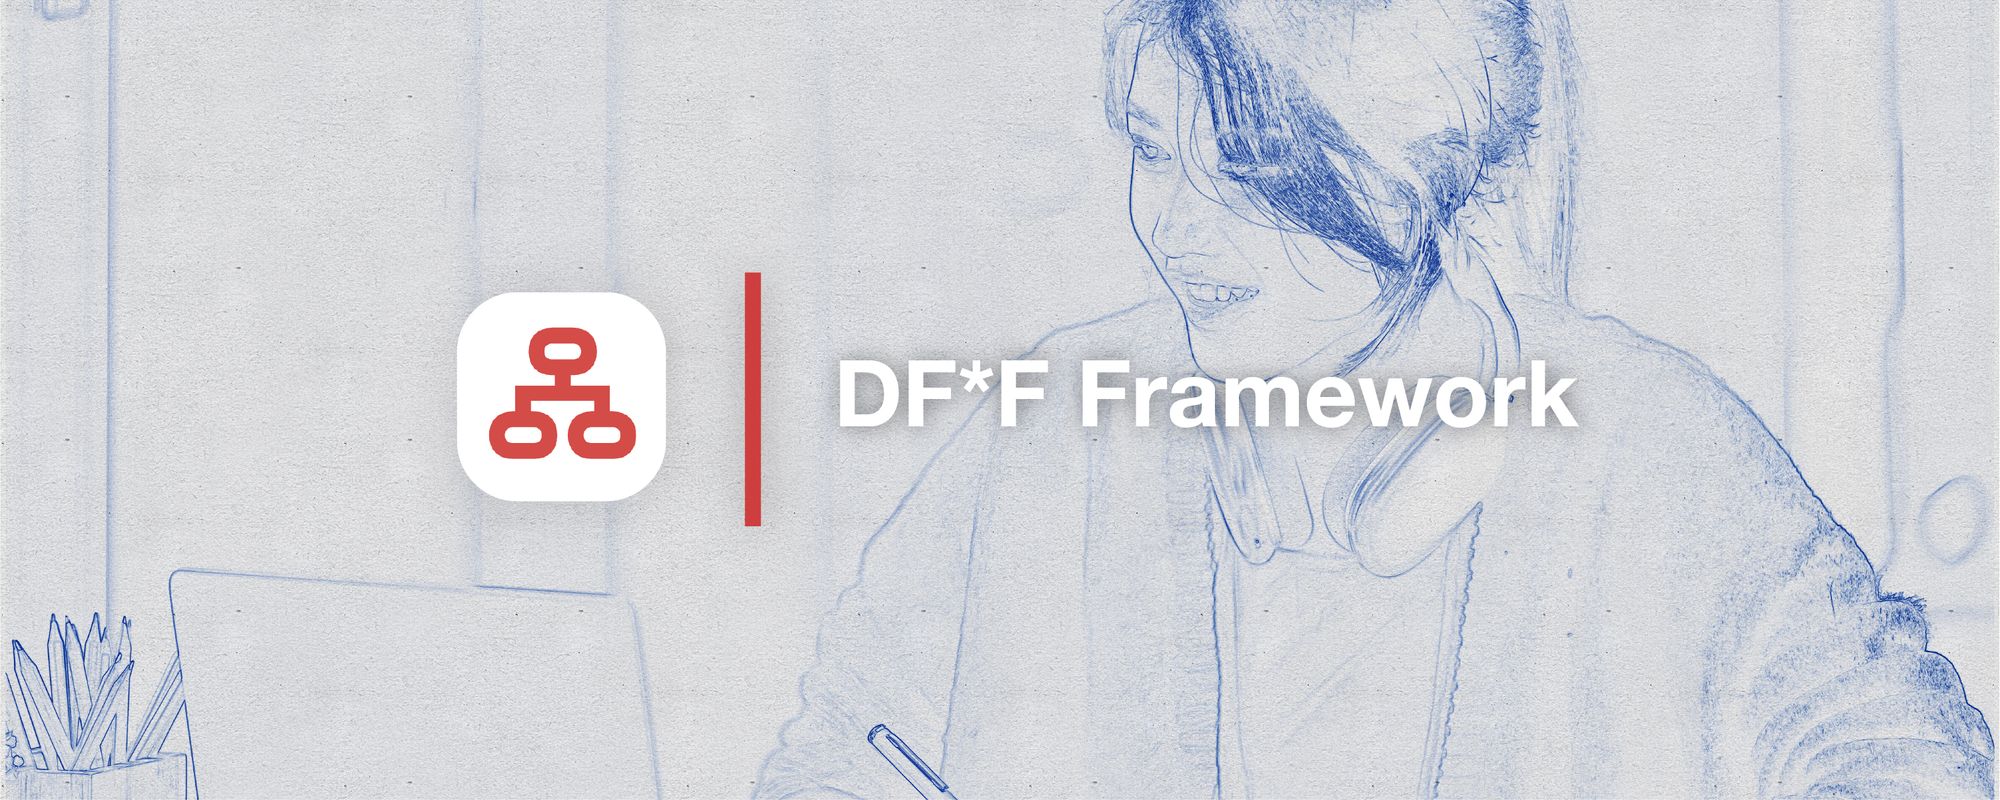 DF*F Framework